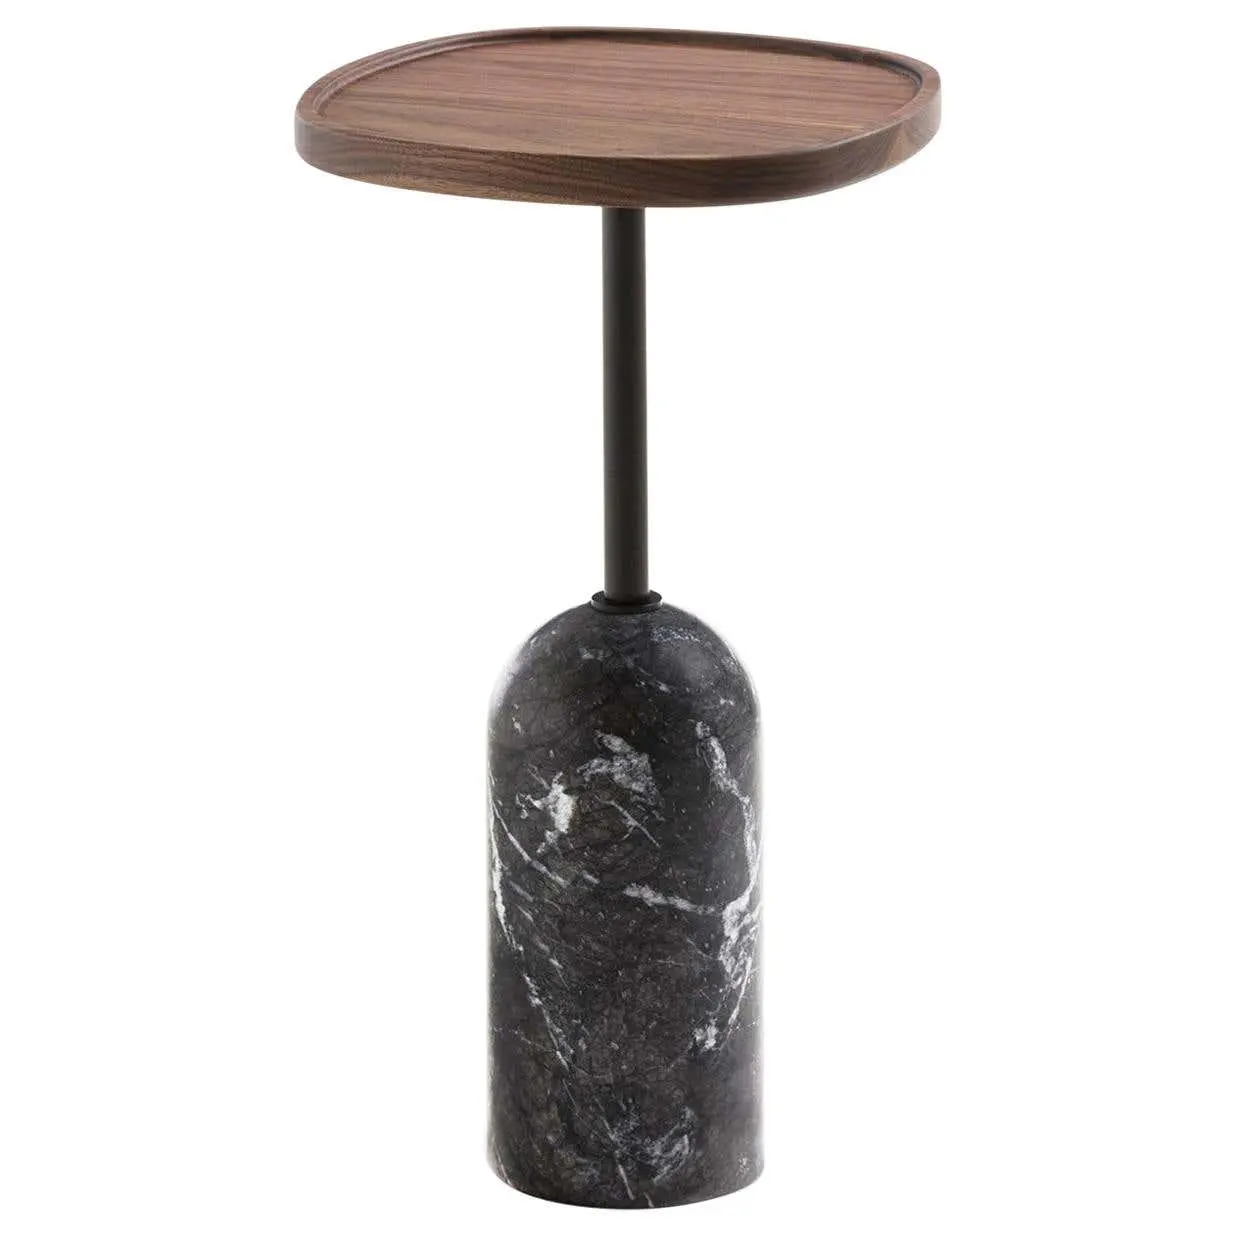 बेलनाकार संगमरमर का आधार साइड टेबल के साथ अंडाकार लकड़ी के शीर्ष